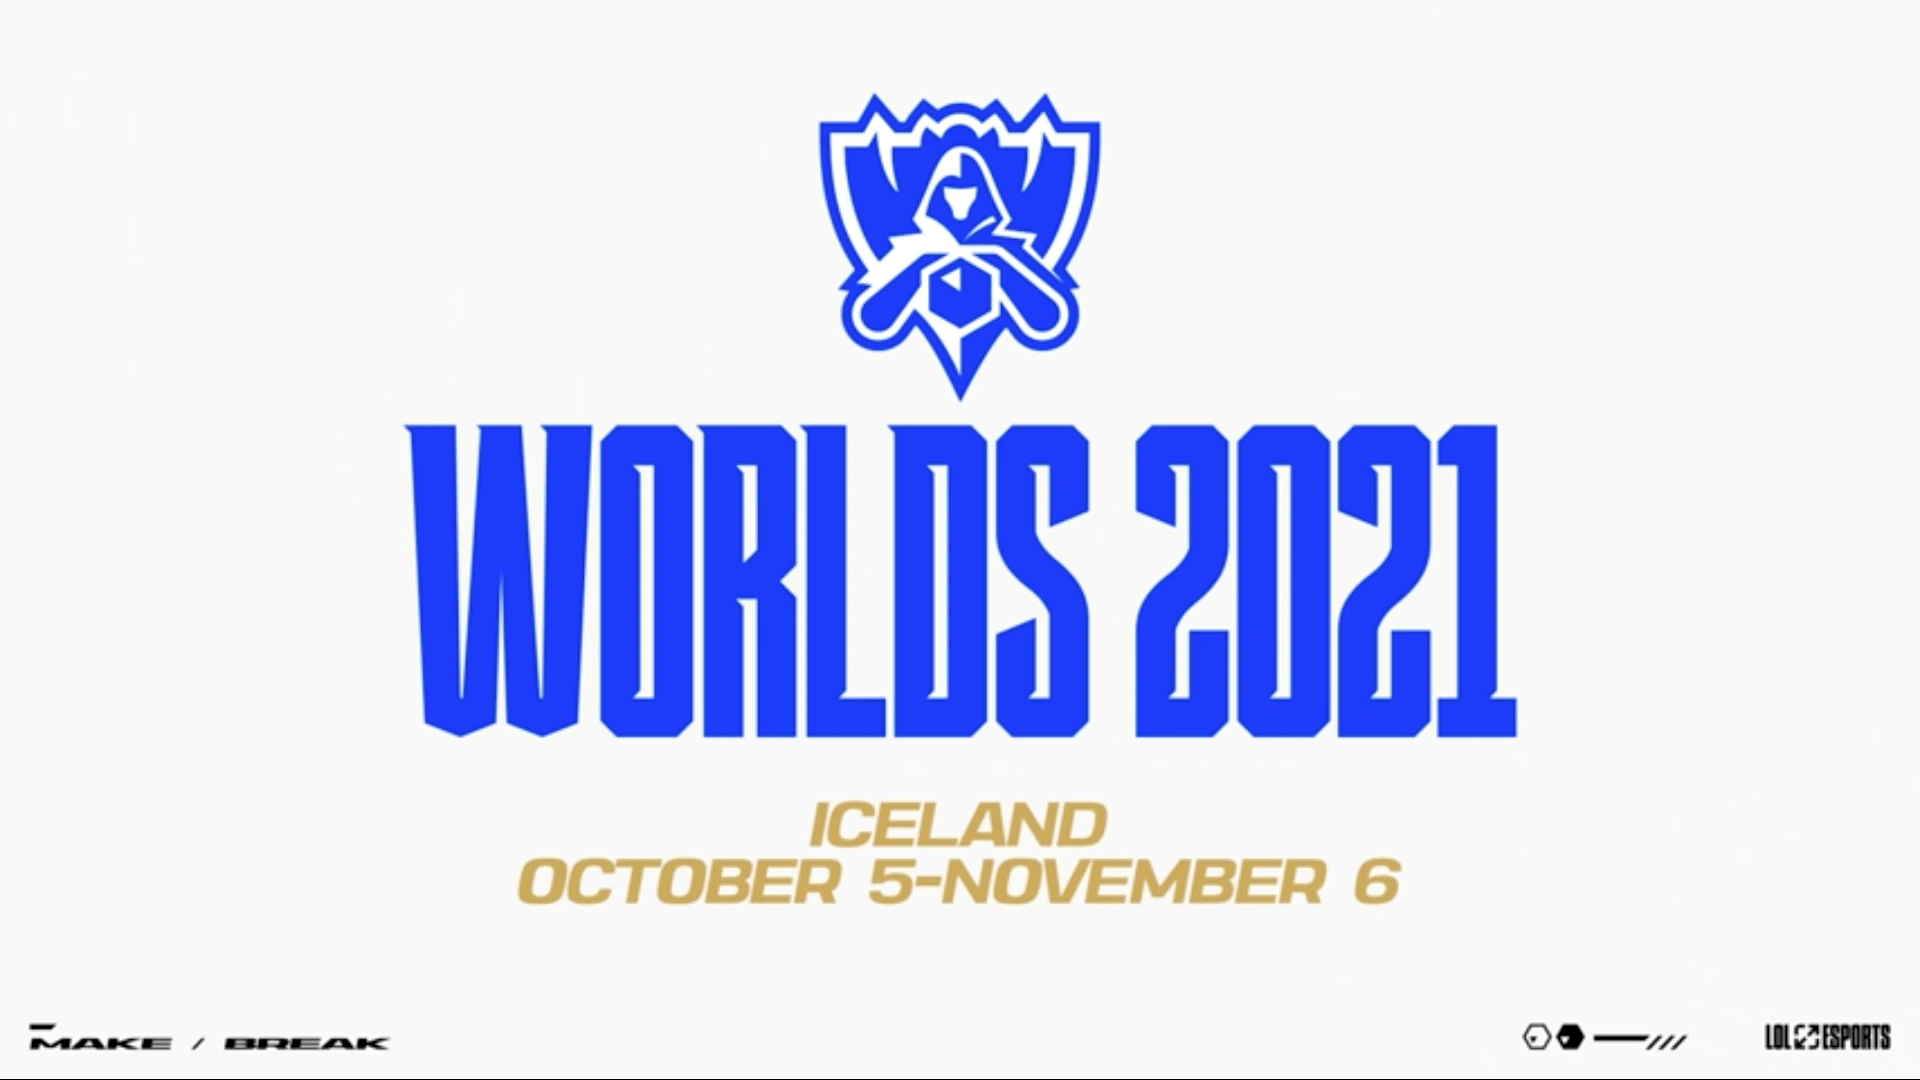 Worlds 2021 D grubu